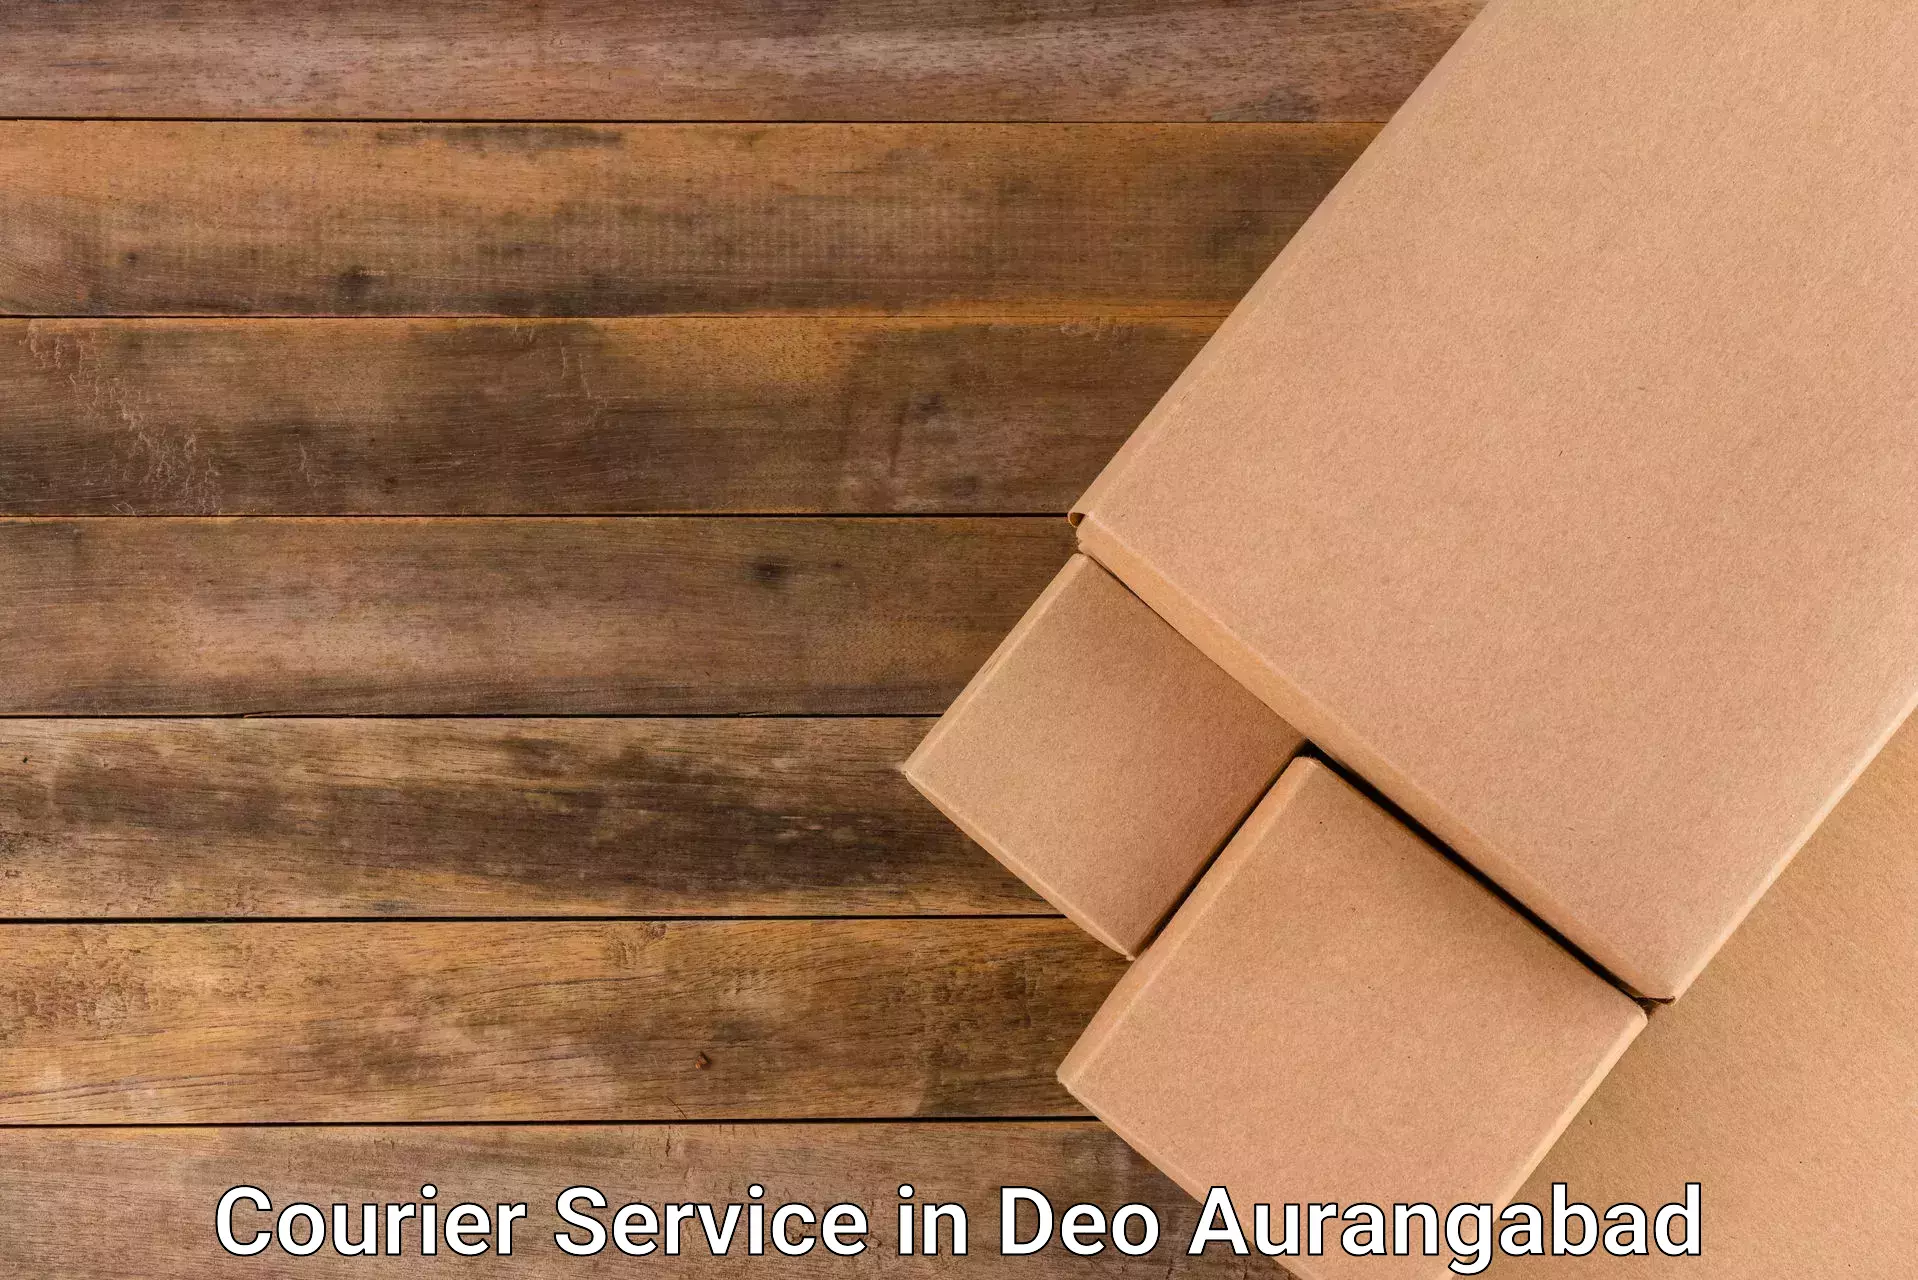 Special handling courier in Deo Aurangabad